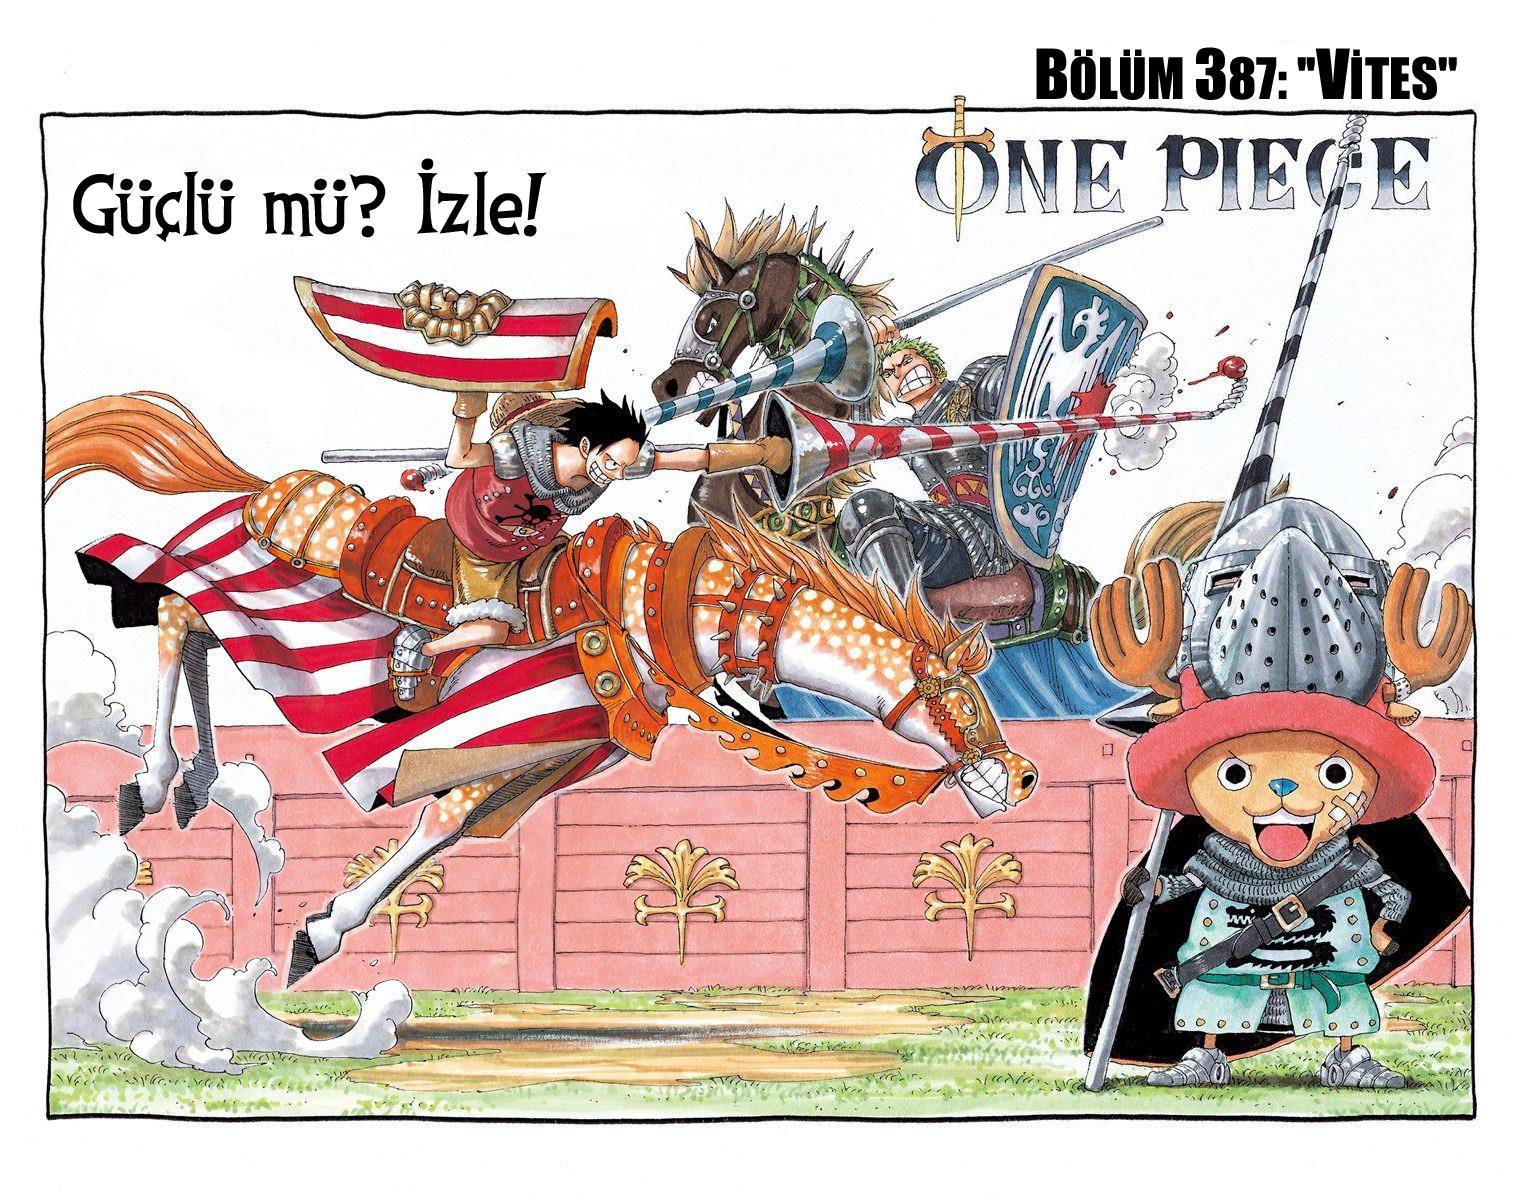 One Piece [Renkli] mangasının 0387 bölümünün 2. sayfasını okuyorsunuz.